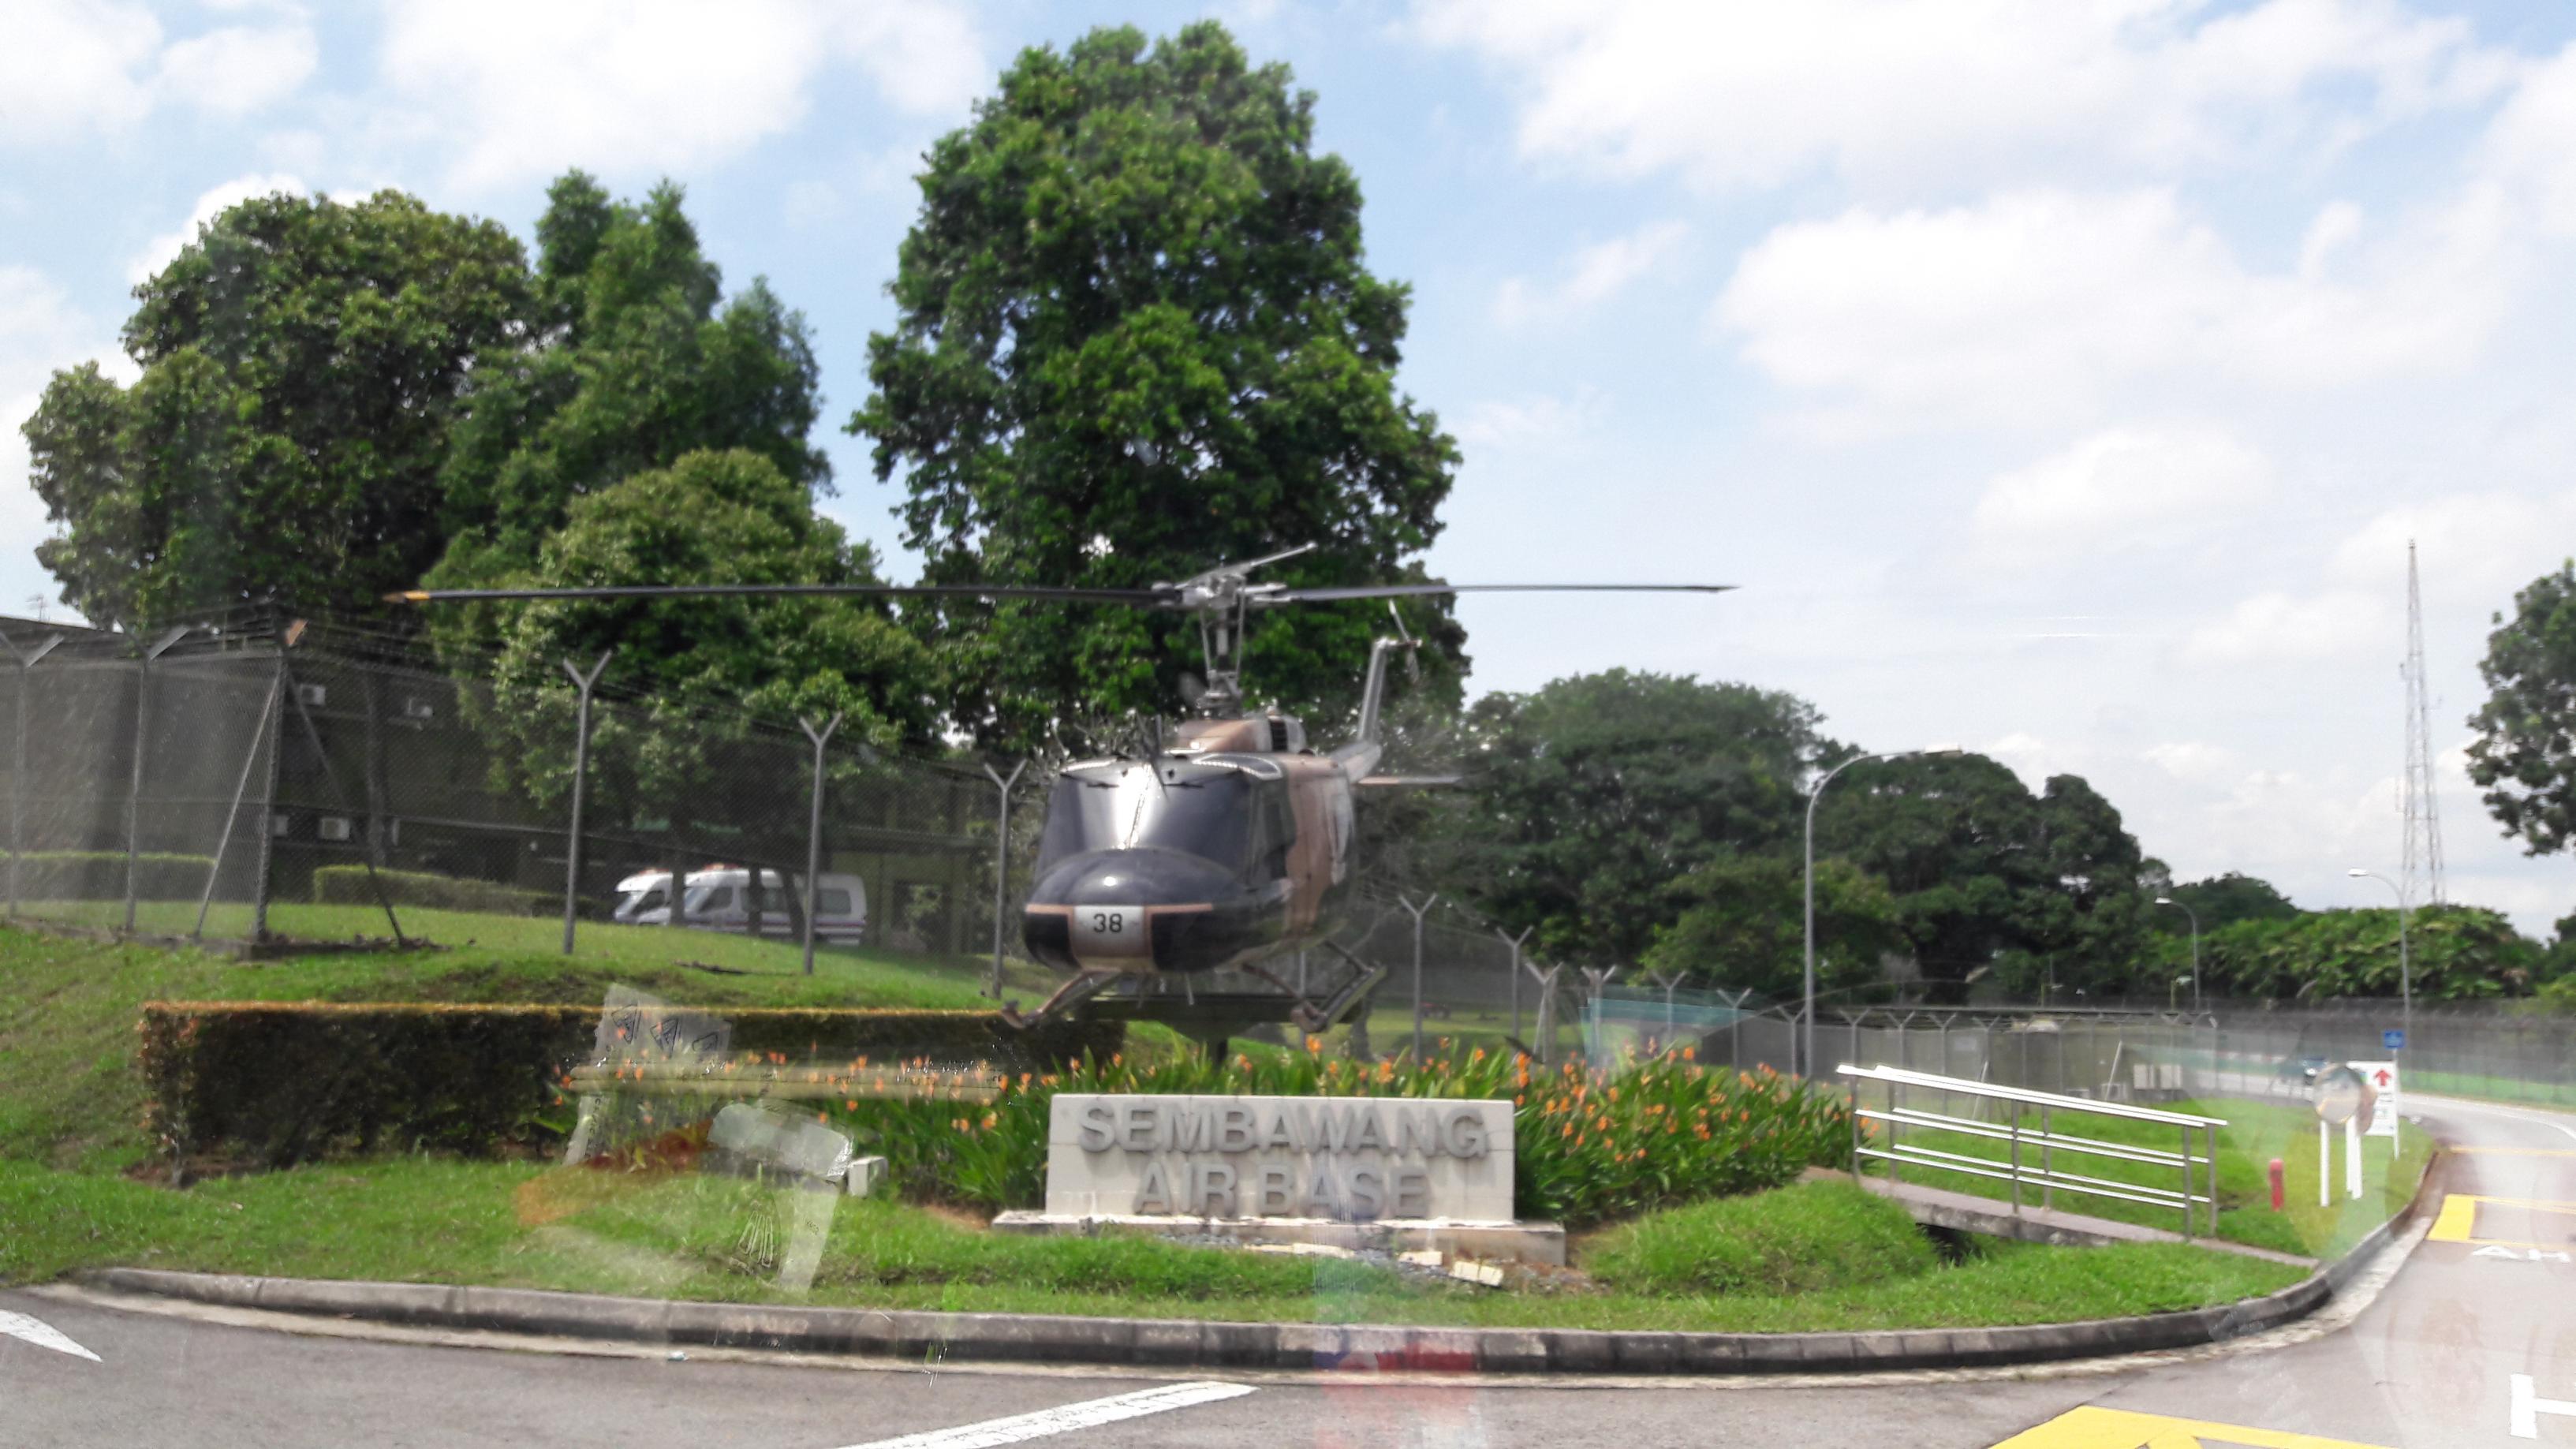 Naam: UH-1 , Sembawang Air Base..jpg
Bekeken: 405
Grootte: 518,1 KB